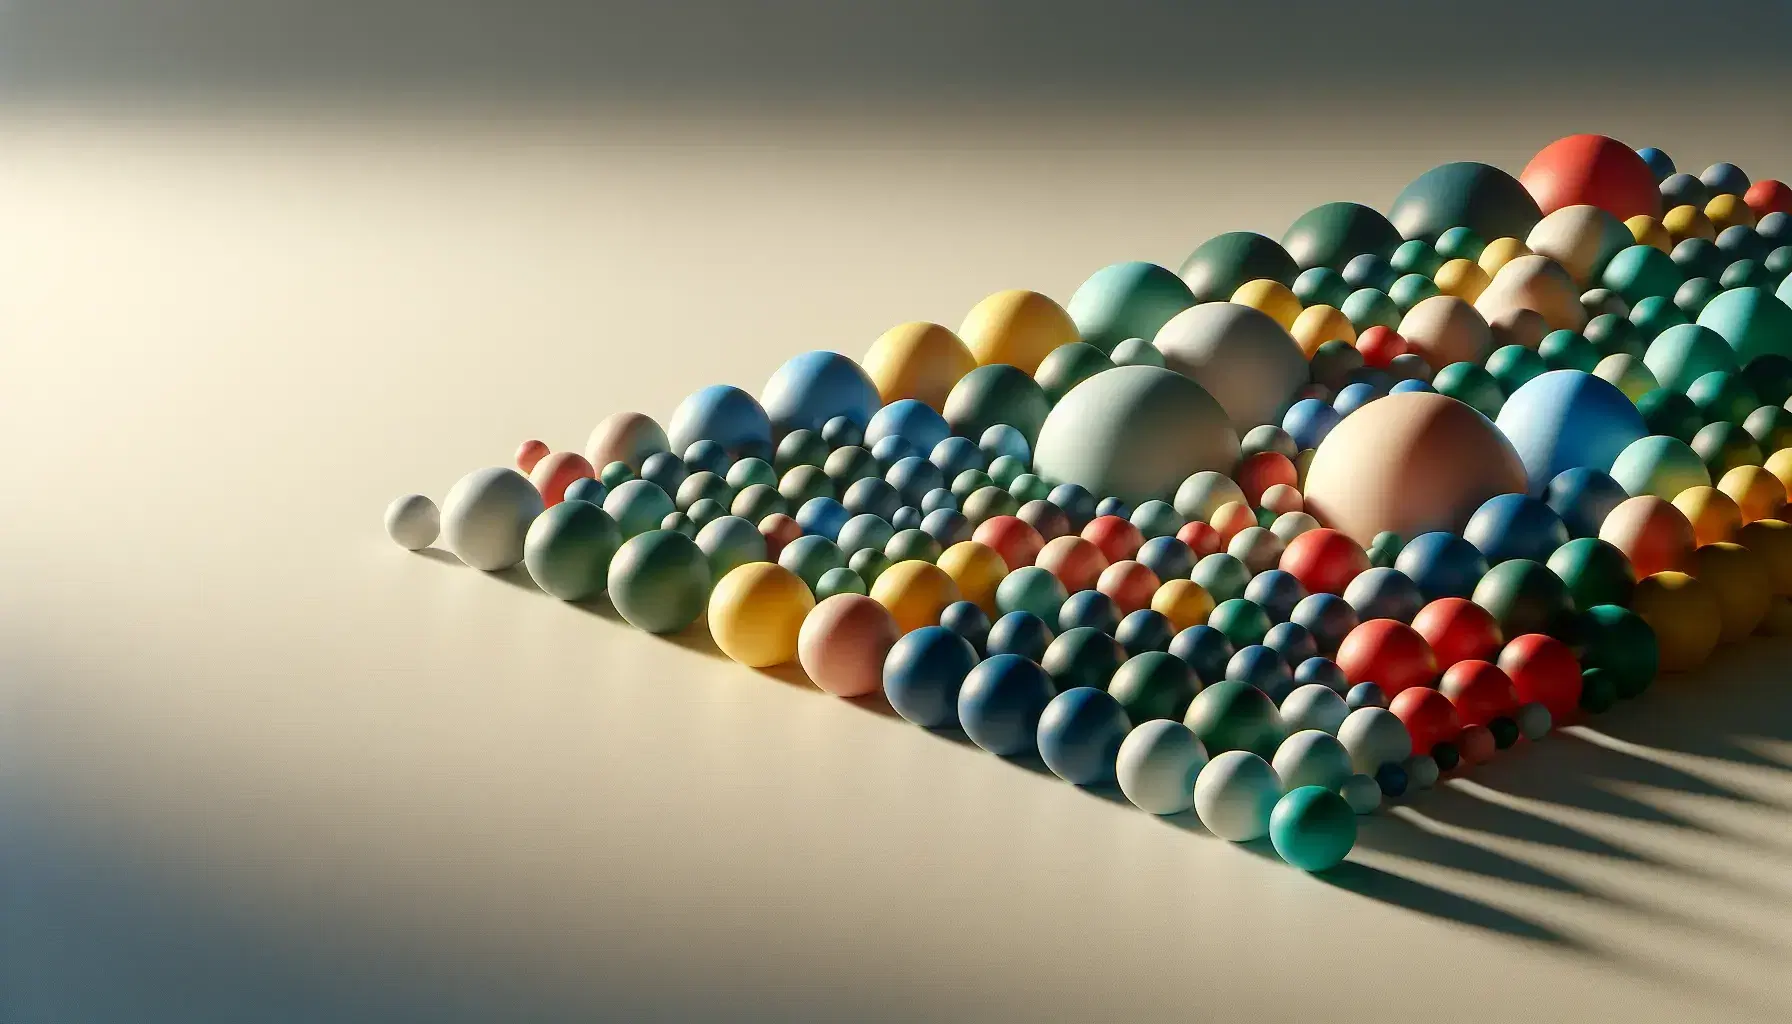 Esferas de colores en gradiente de tamaño formando una distribución normal sobre superficie lisa con sombras suaves.